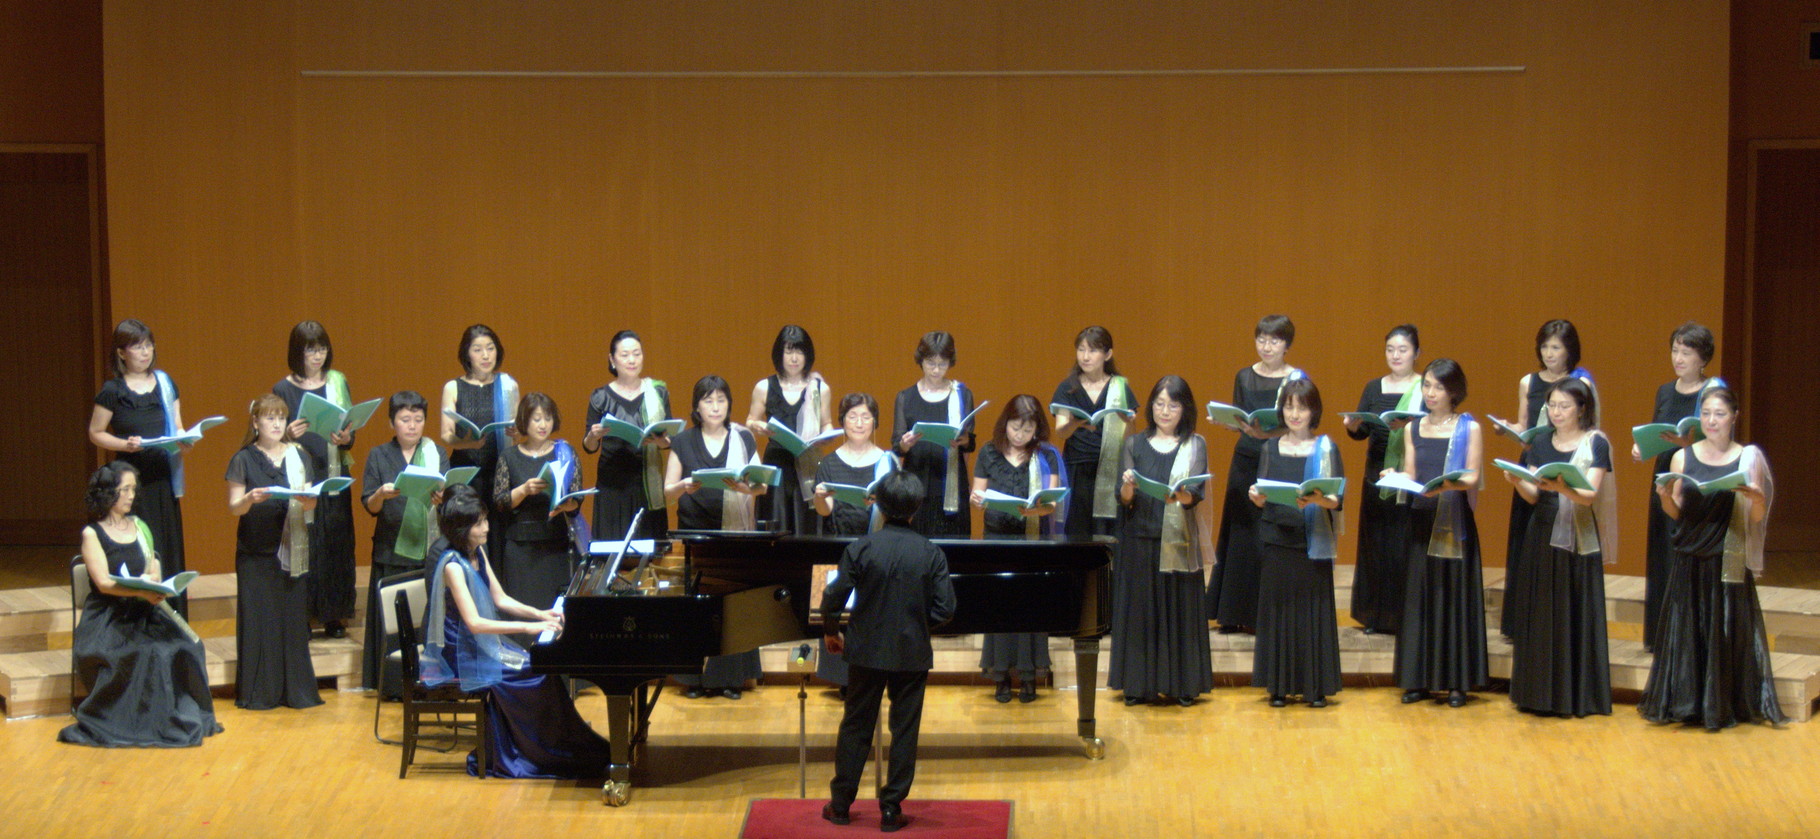 女声合唱、「一千零一次人生」で広東語を披露